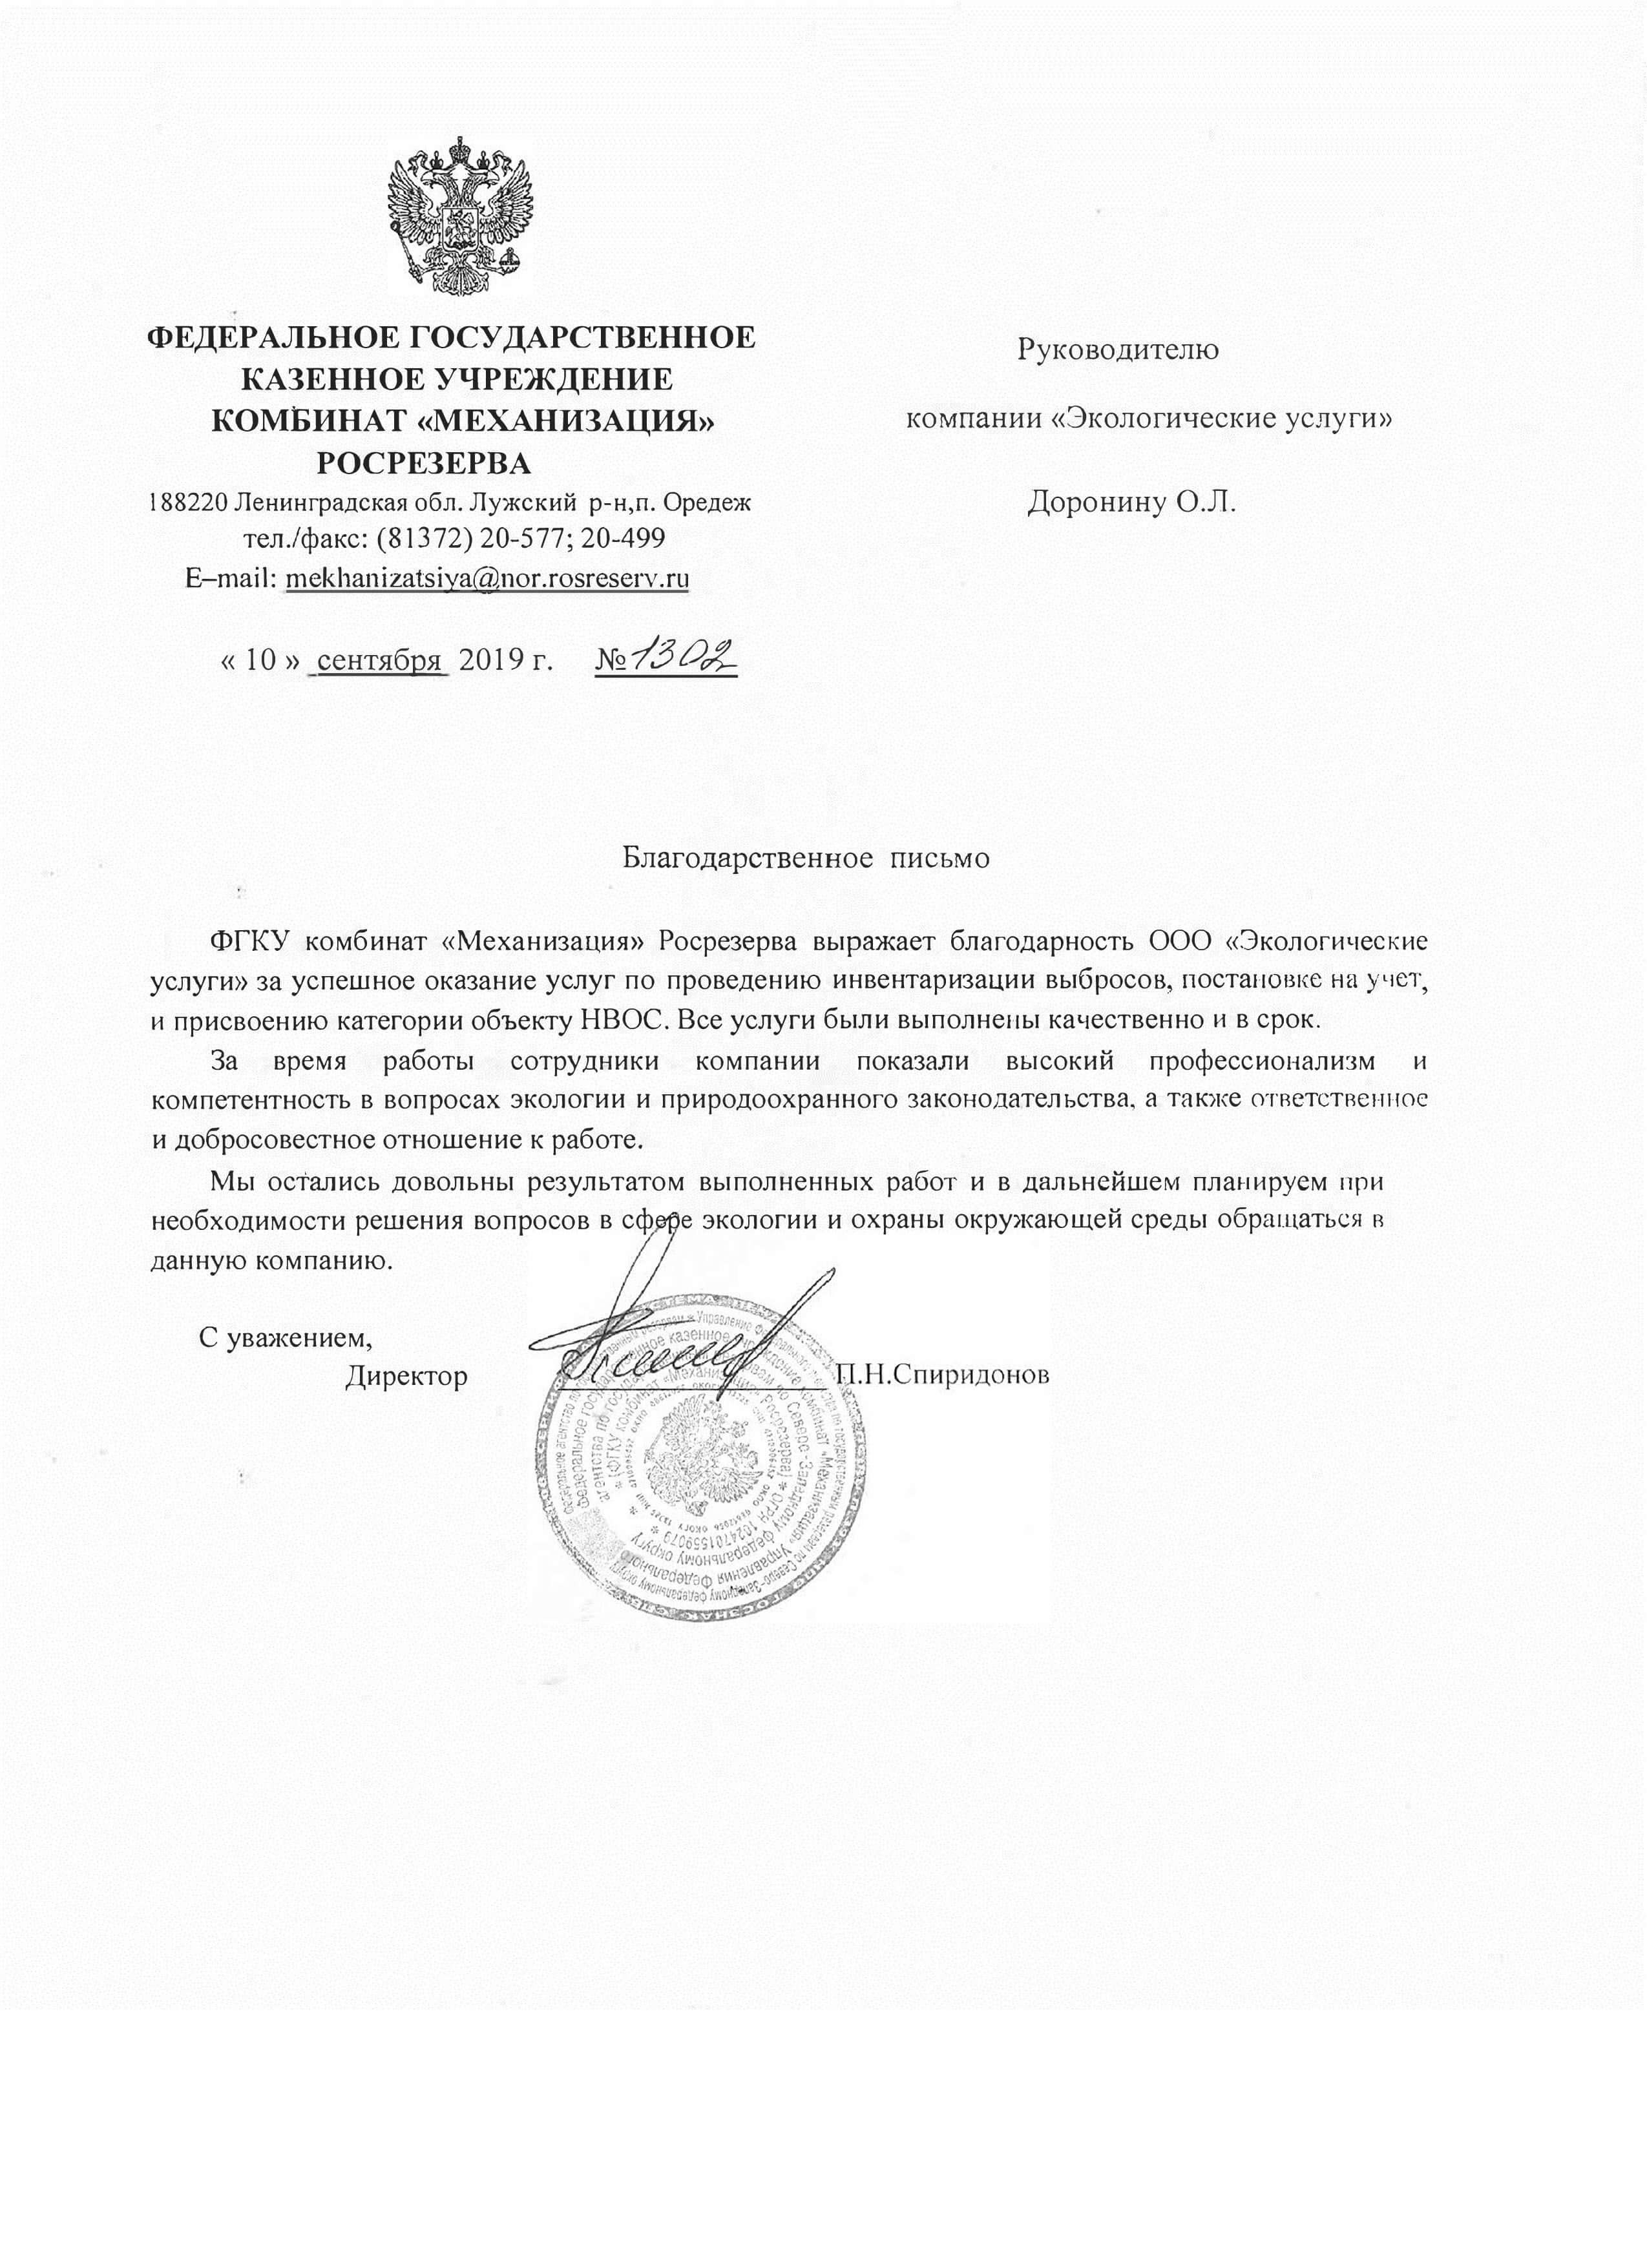 Благодарственное письмо от ФГКК "Механизация" Росрезерва